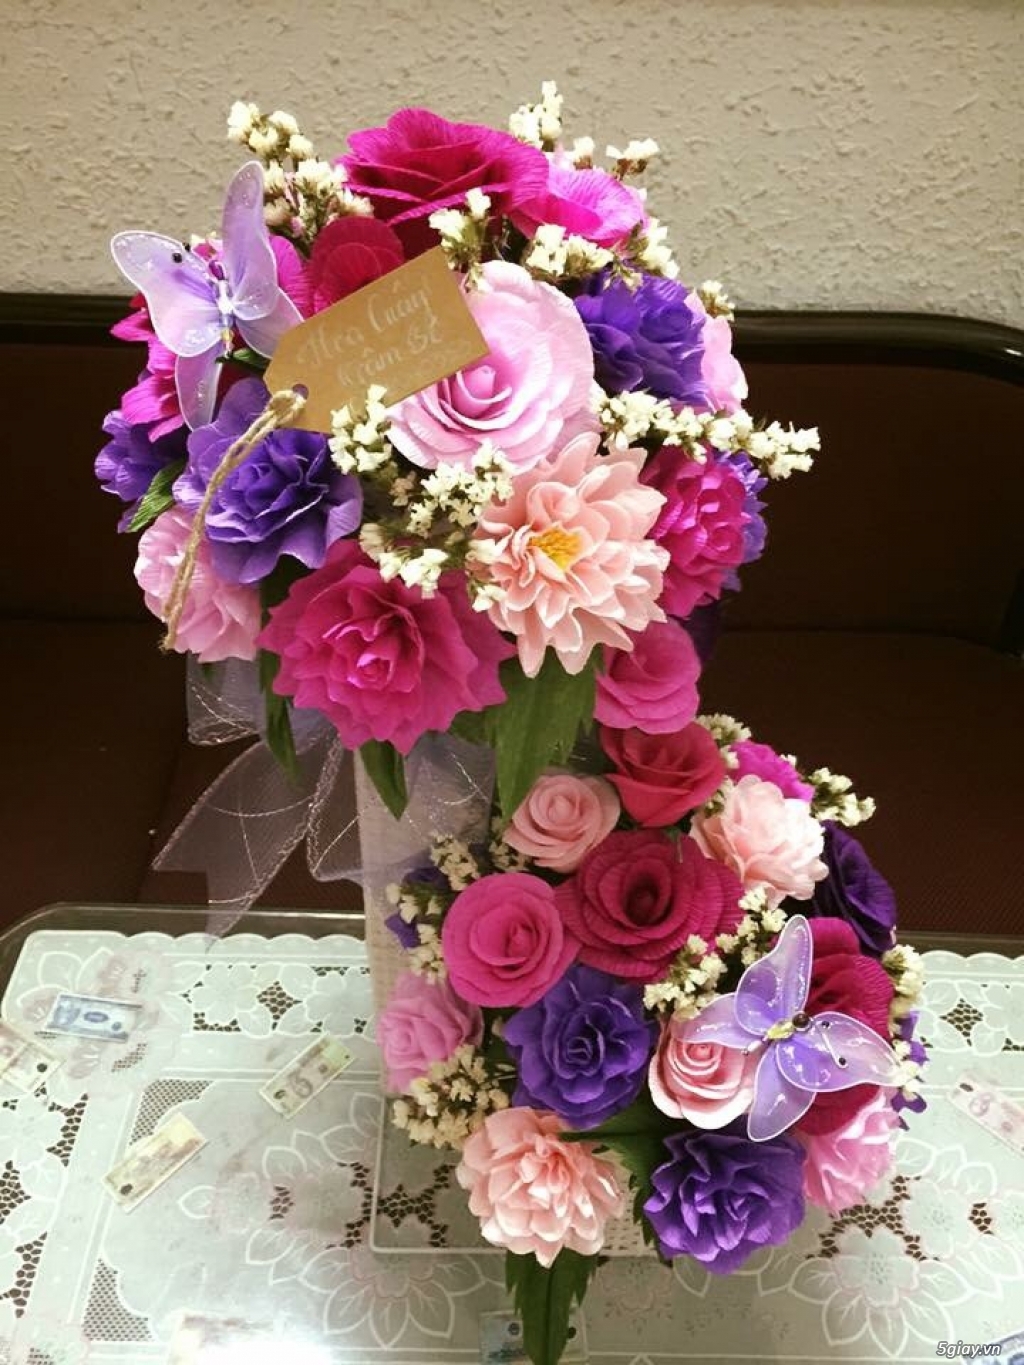 Hoa giấy Nhận đặt hoa 20-11 và hoa sinh nhật hoa cầm tay cô dâu - 1